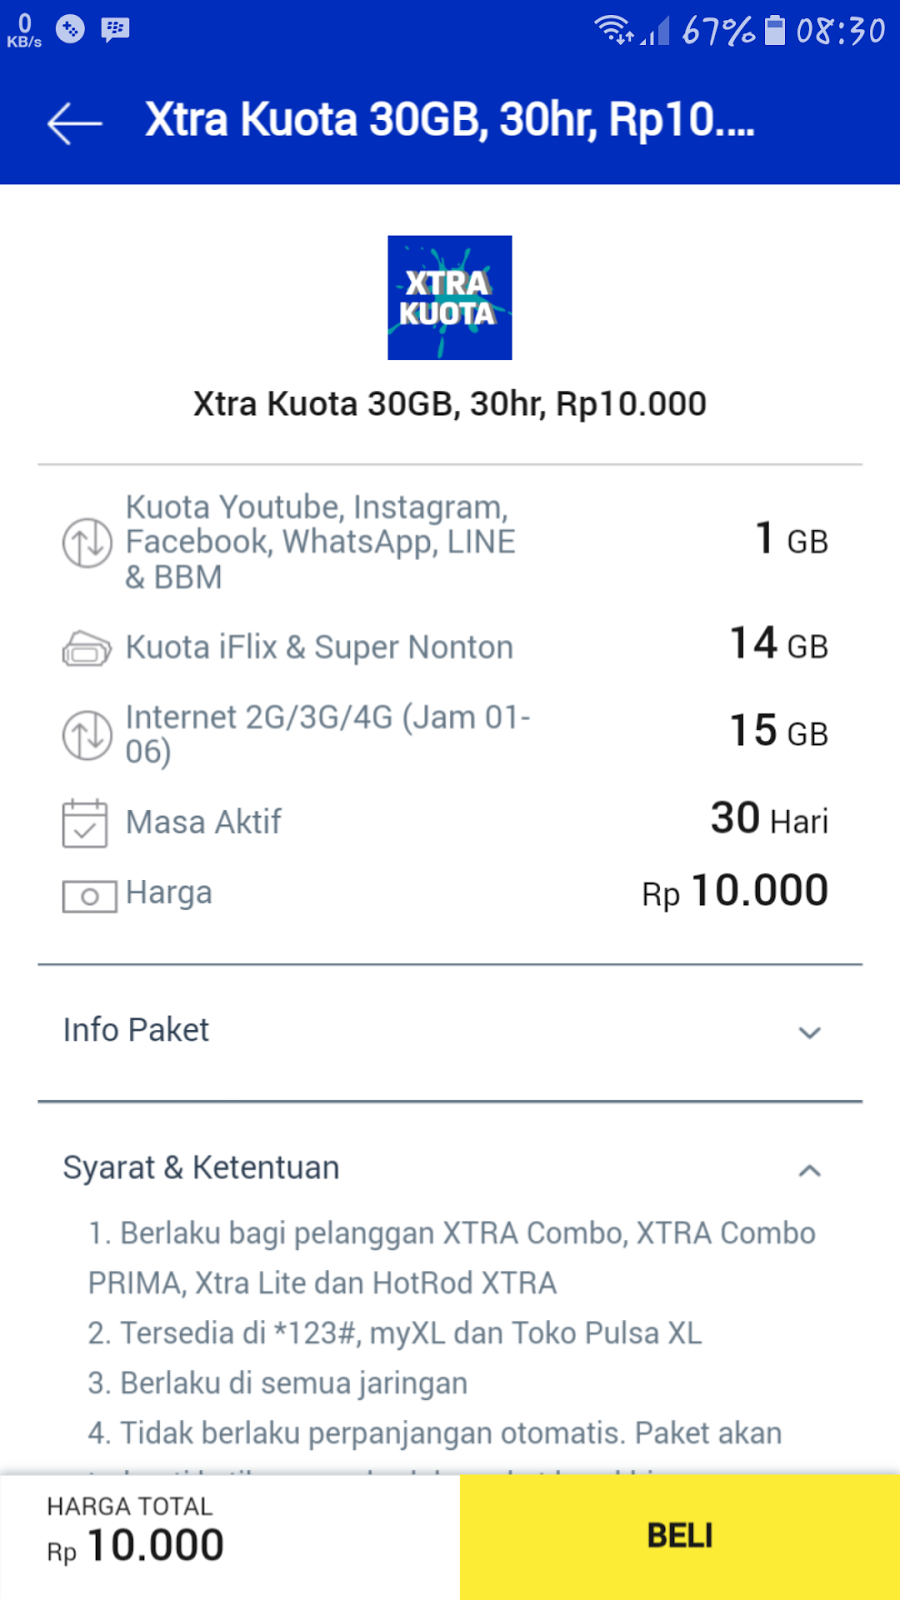 Cara Daftar Paket Xtra Kuota XL 30 GB Rp 10 Ribu